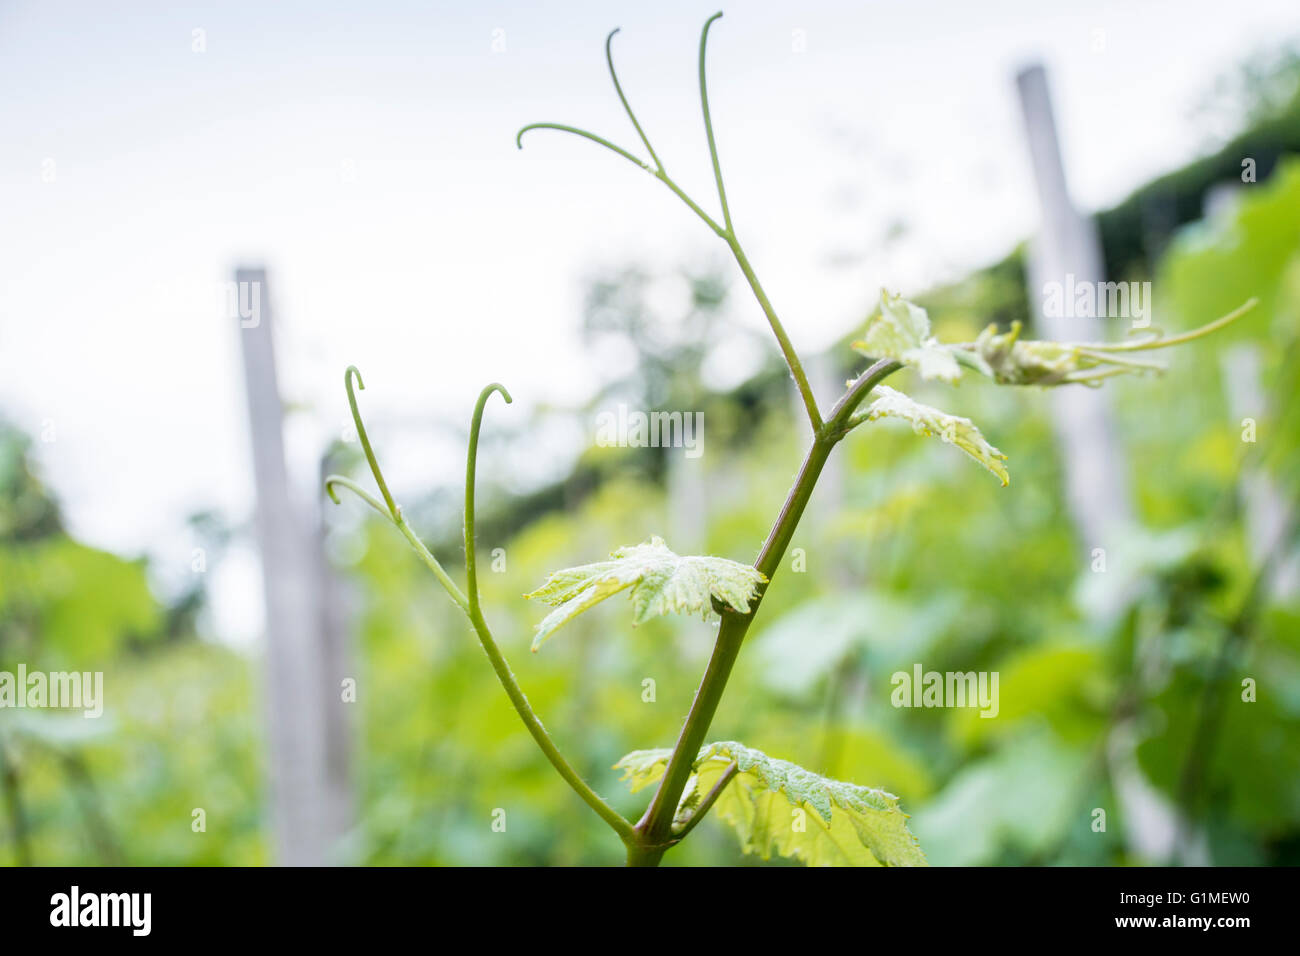 vineyard in spring Stock Photo